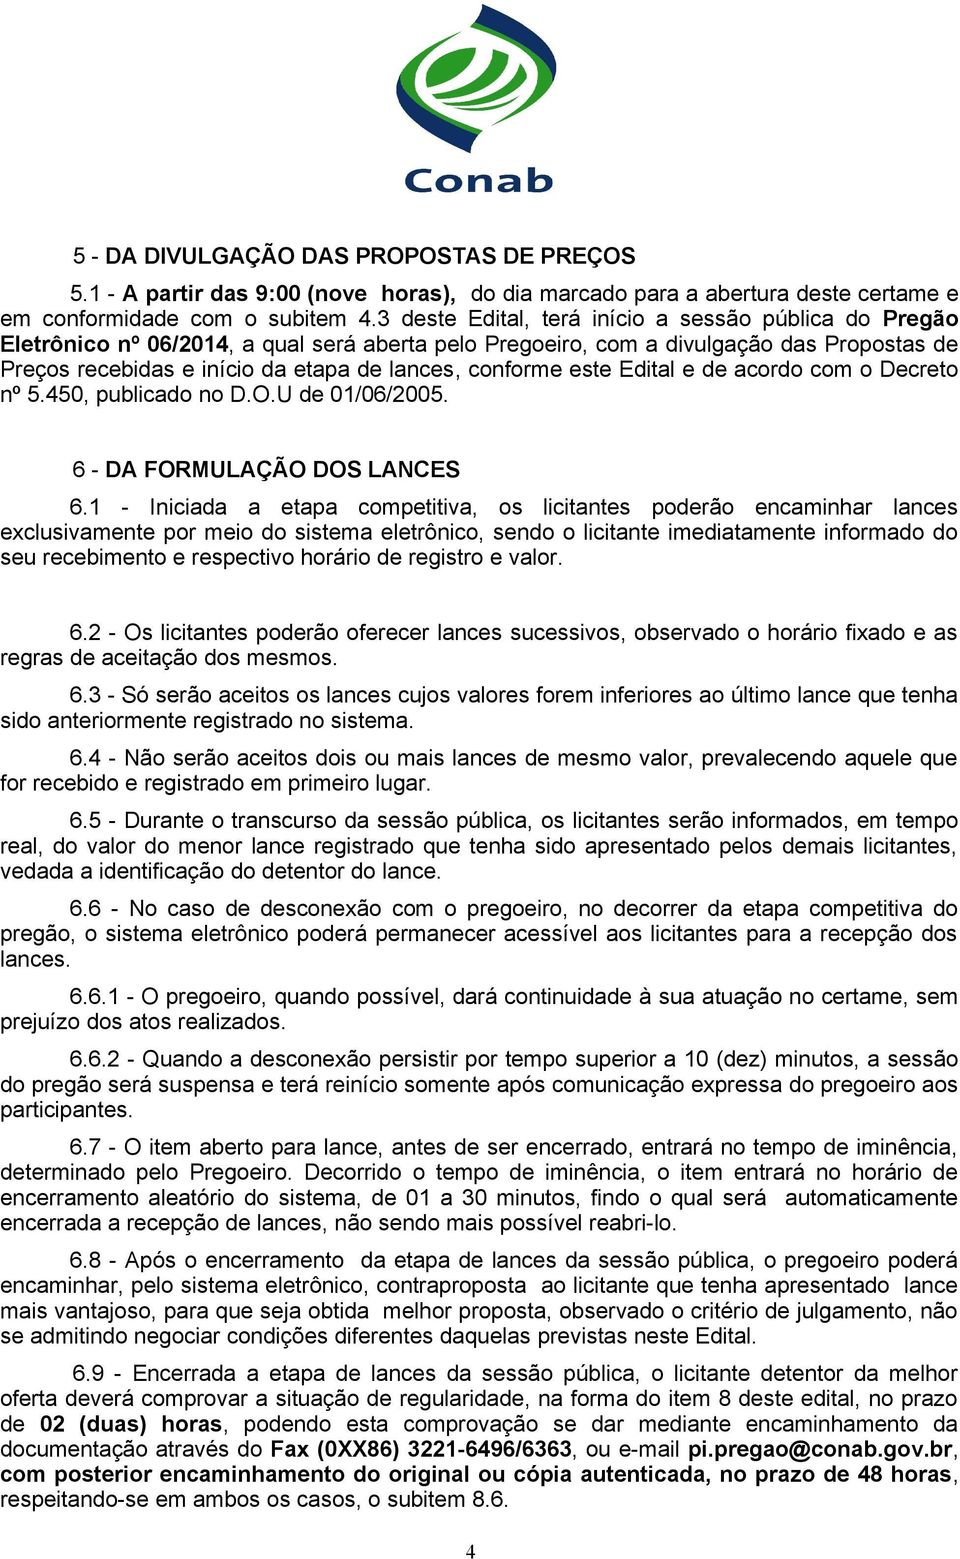 conforme este Edital e de acordo com o Decreto nº 5.450, publicado no D.O.U de 01/06/2005. 6 - DA FORMULAÇÃO DOS LANCES 6.